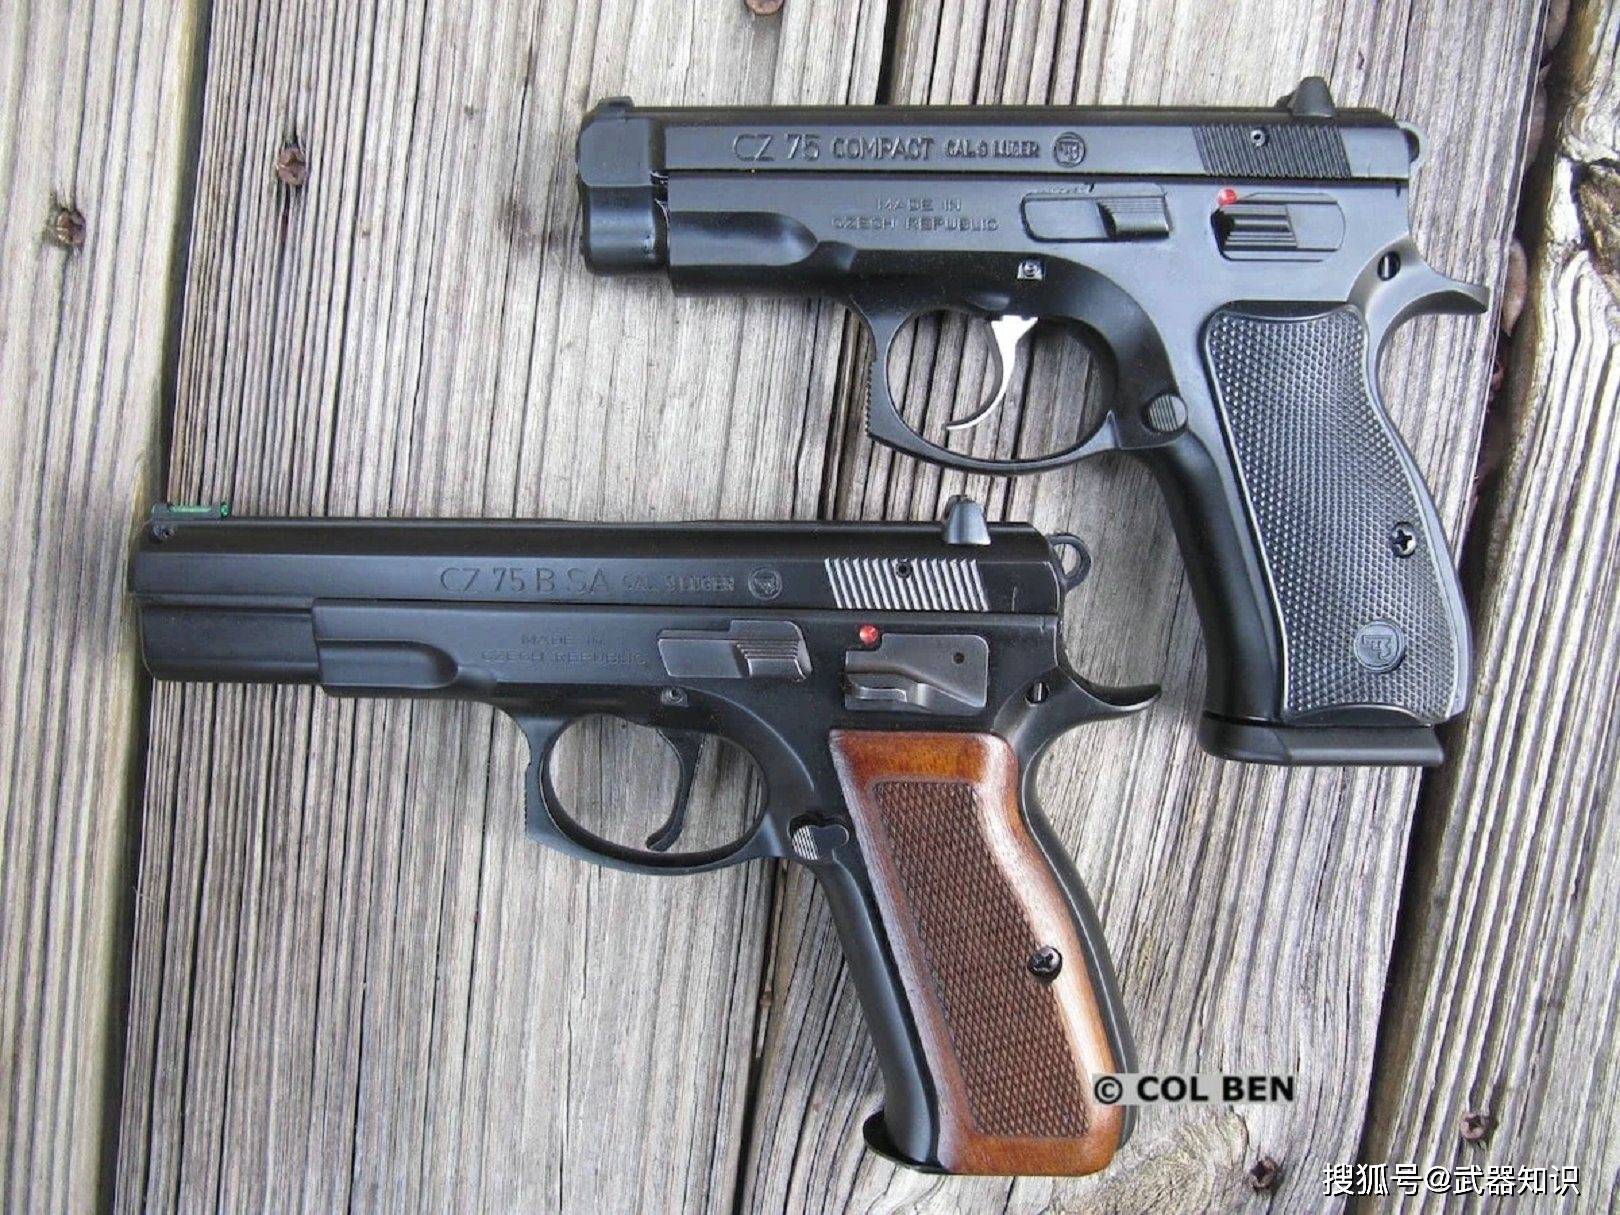 集多种手枪优点于一身 捷克名枪cz75 性价比极高